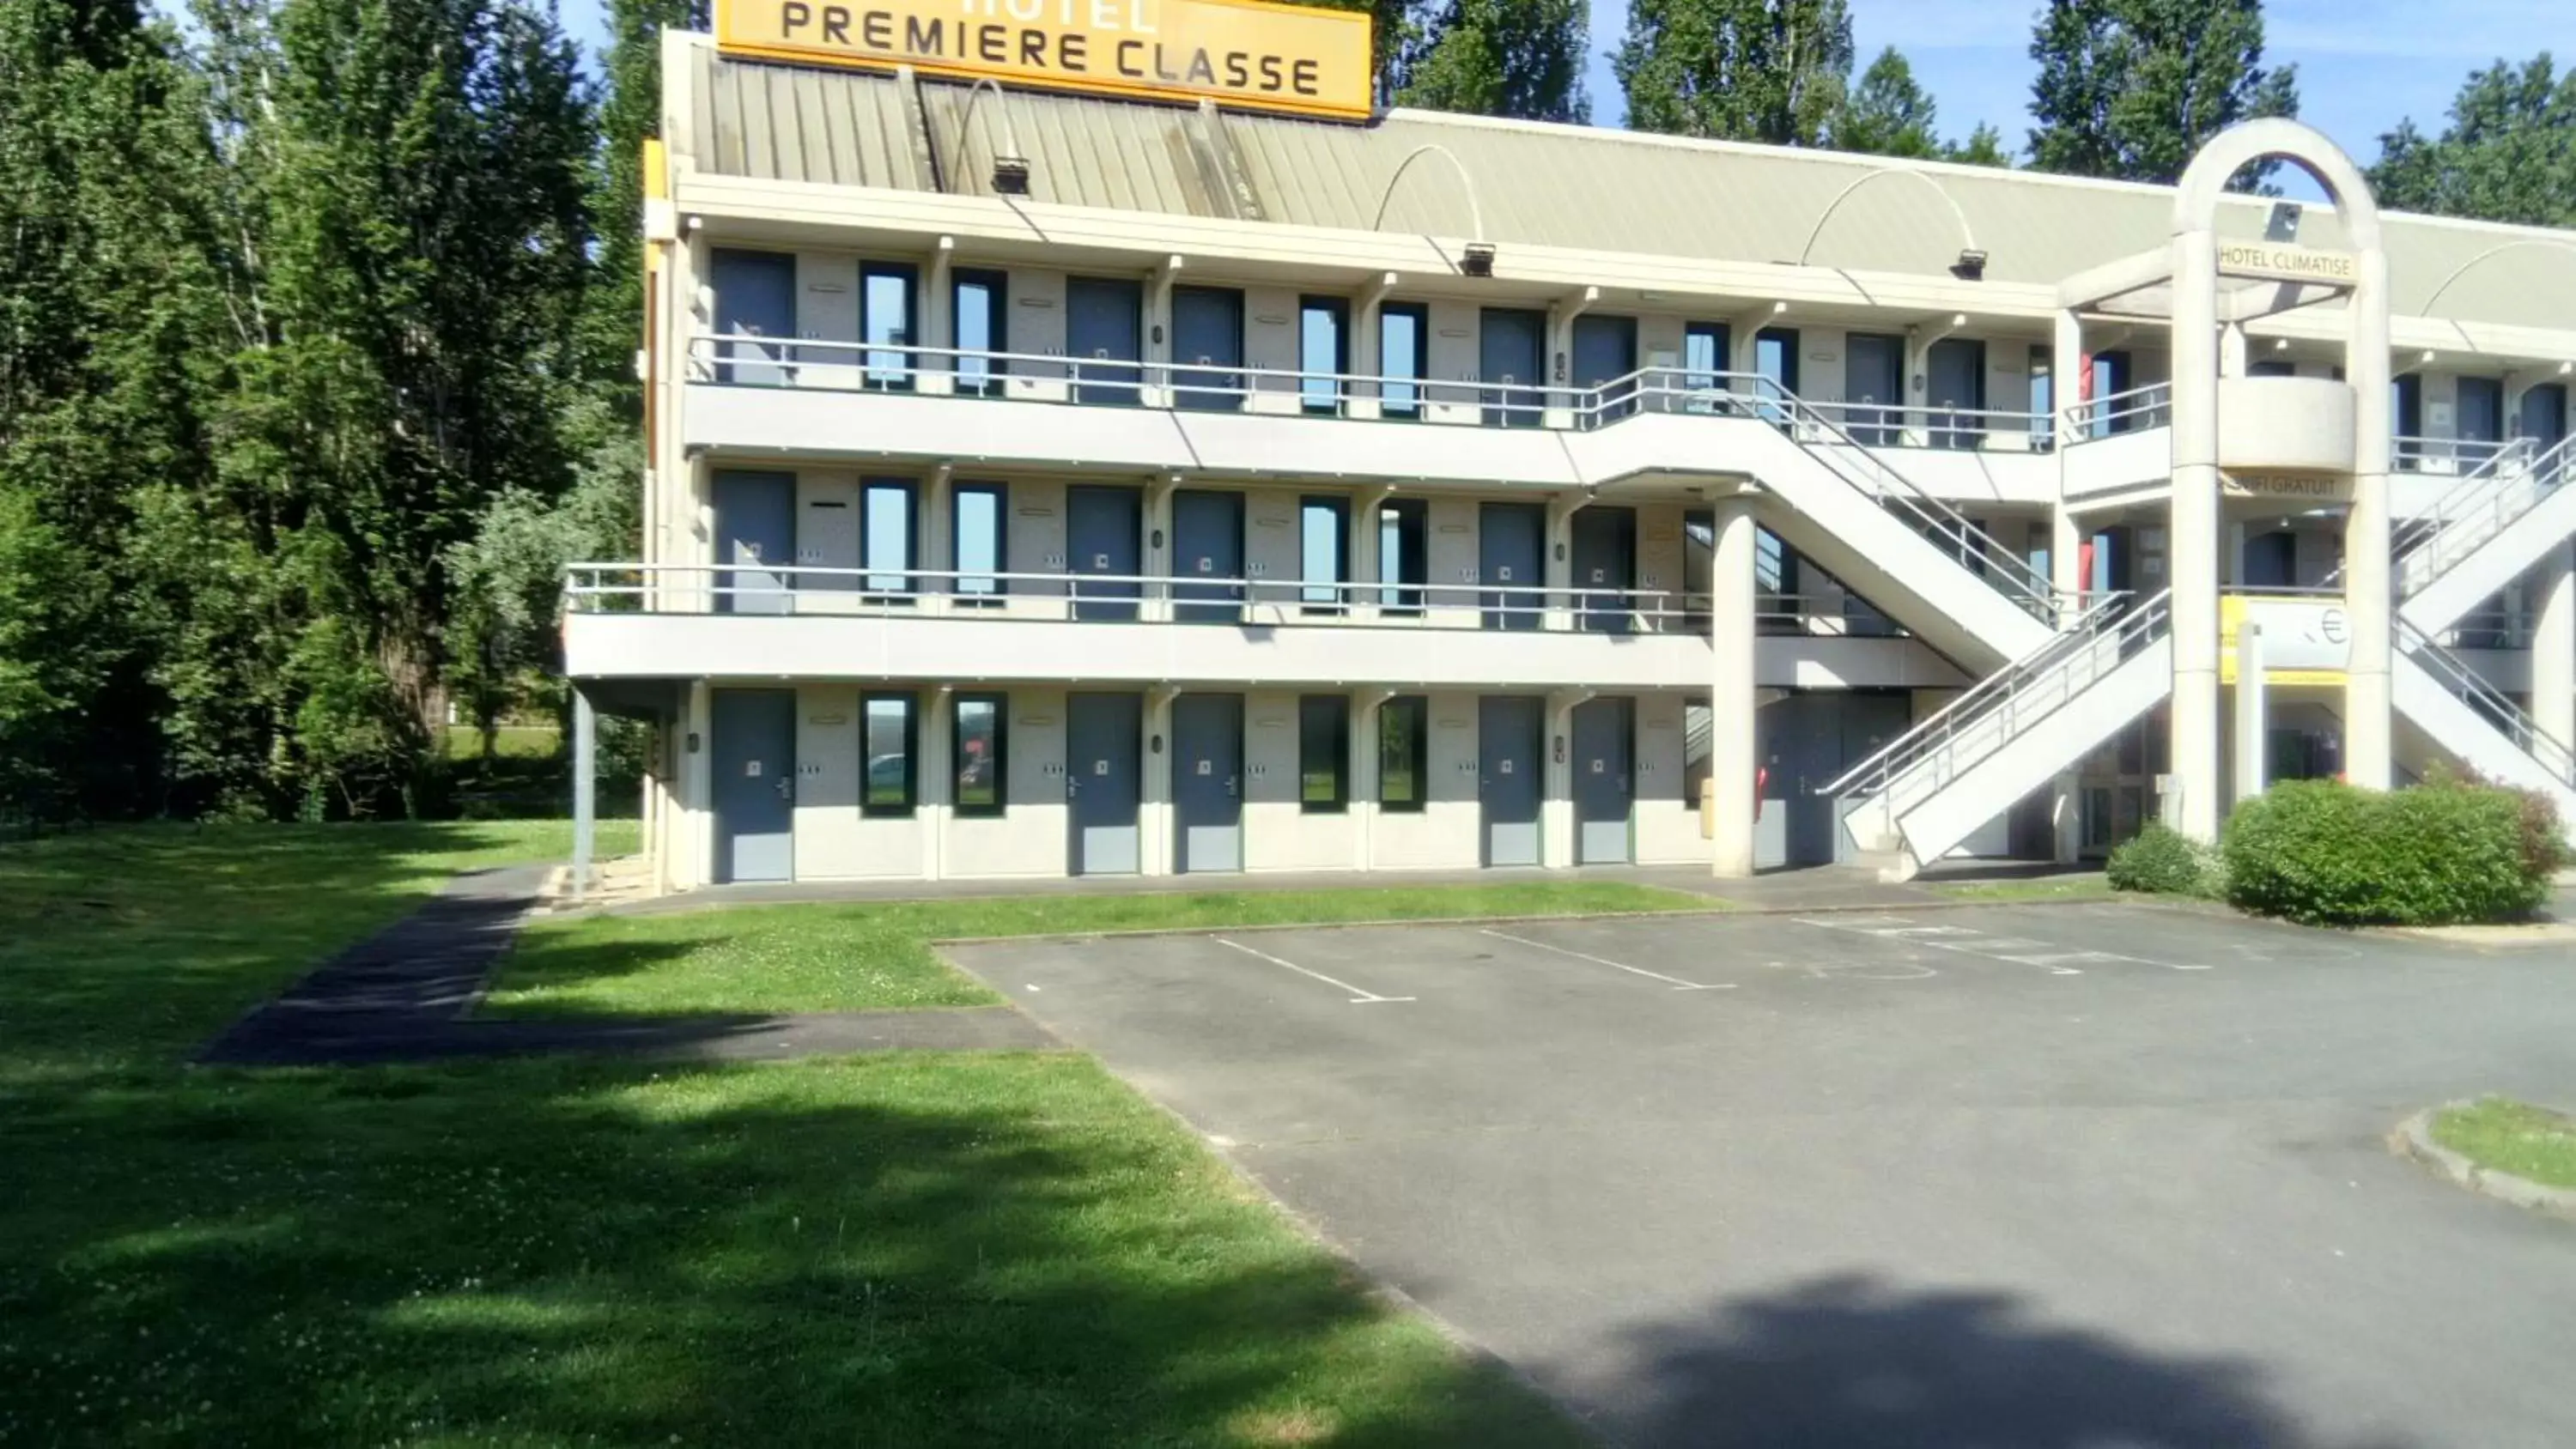 Facade/entrance, Property Building in Premiere Classe Périgueux - Boulazac